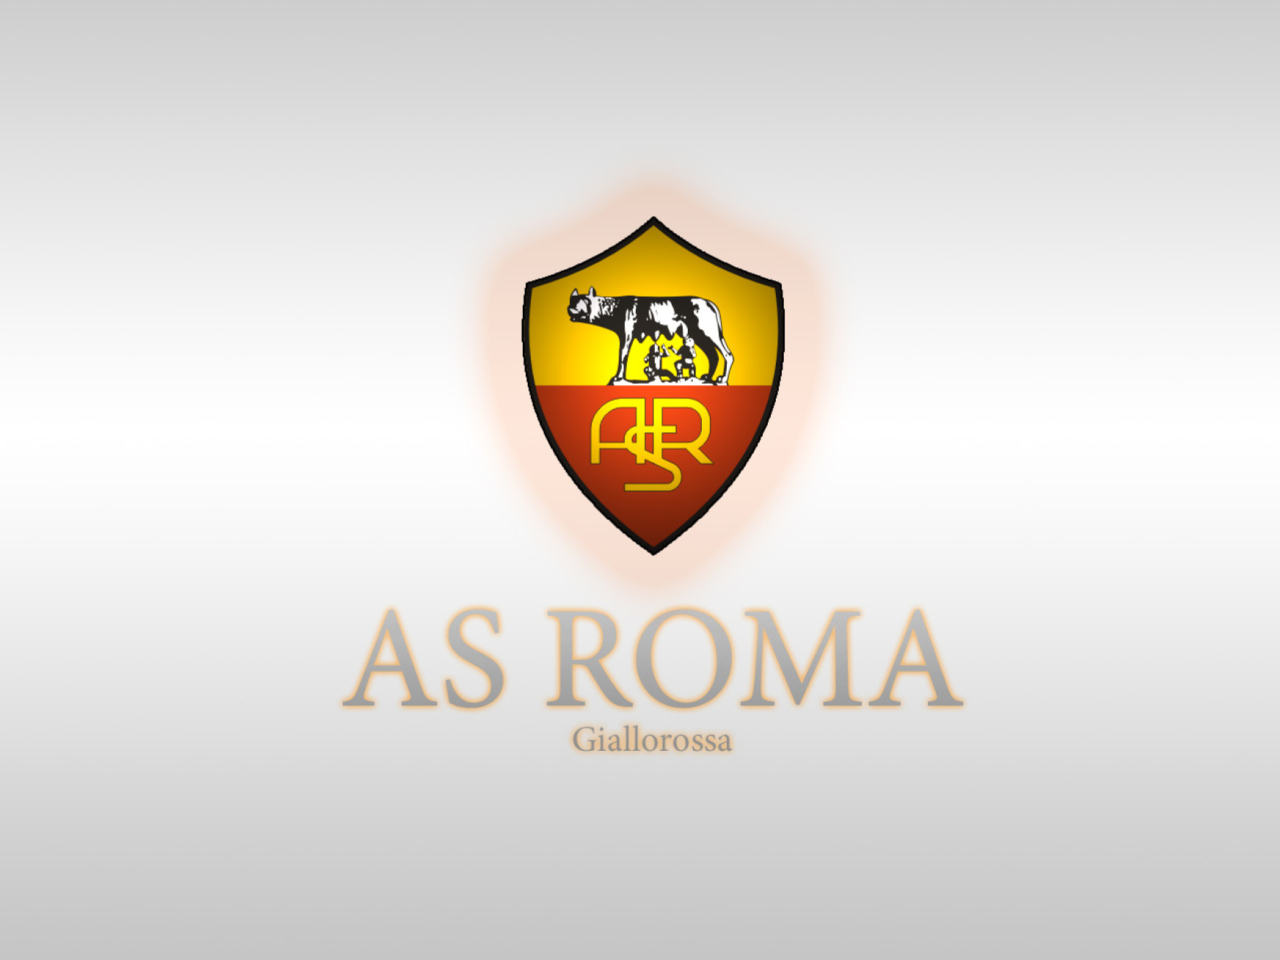 Das As Roma Wallpaper 1280x960